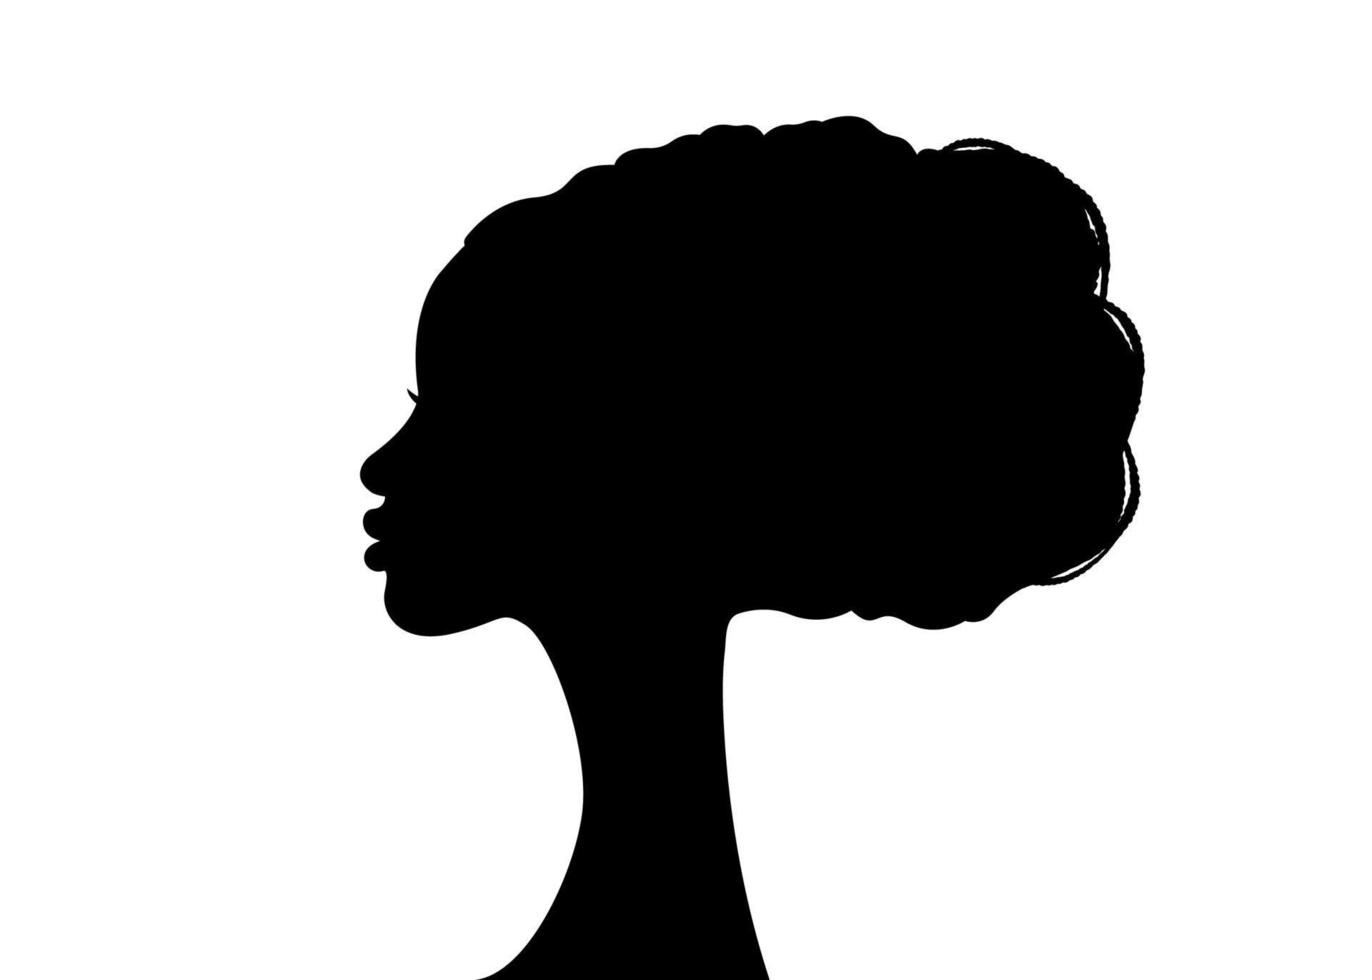 acconciature afro, ritratto bellezza donna parrucchiere logo design silhouette, vettore isolato su sfondo bianco